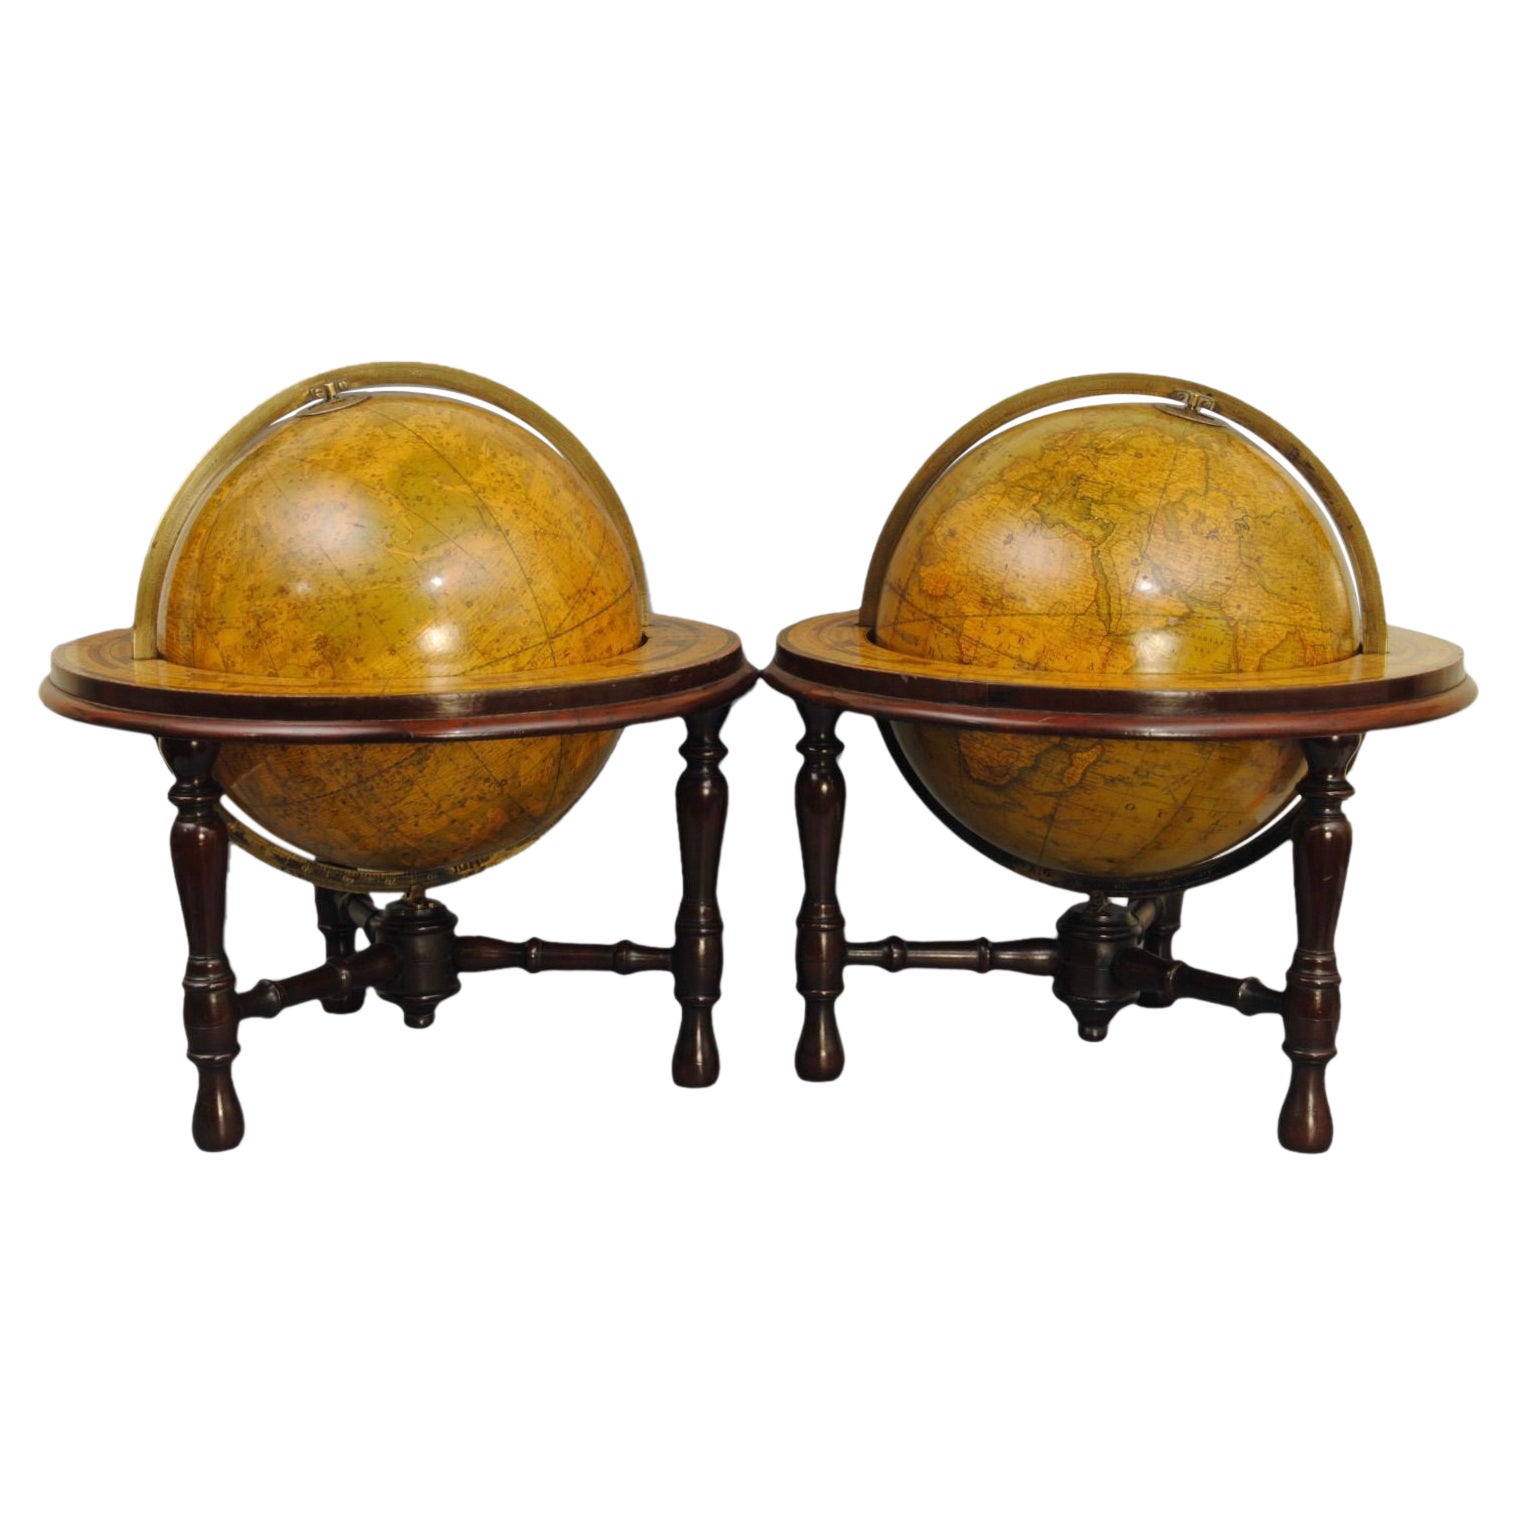 Paar Tischkugeln aus dem 19. Jahrhundert von Crunchley